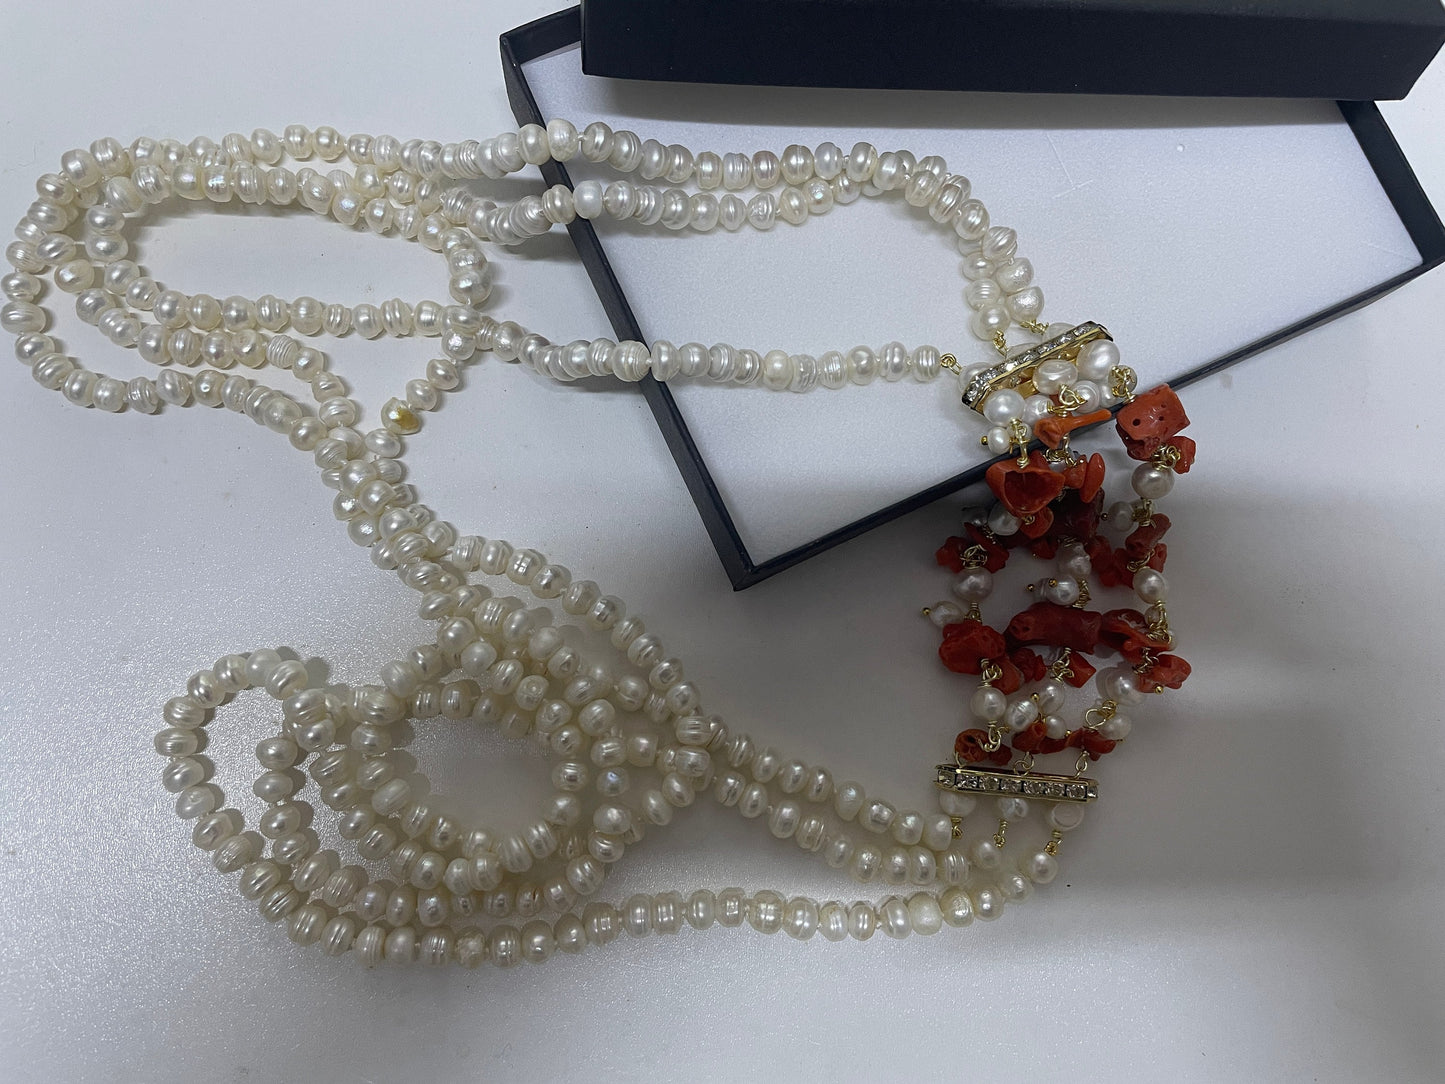 Collana multifilo con perle di fiume, collana Corallo e perle, Corallo naturale del Mediterraneo, collana maxi, regalo sposa, collana boho.&